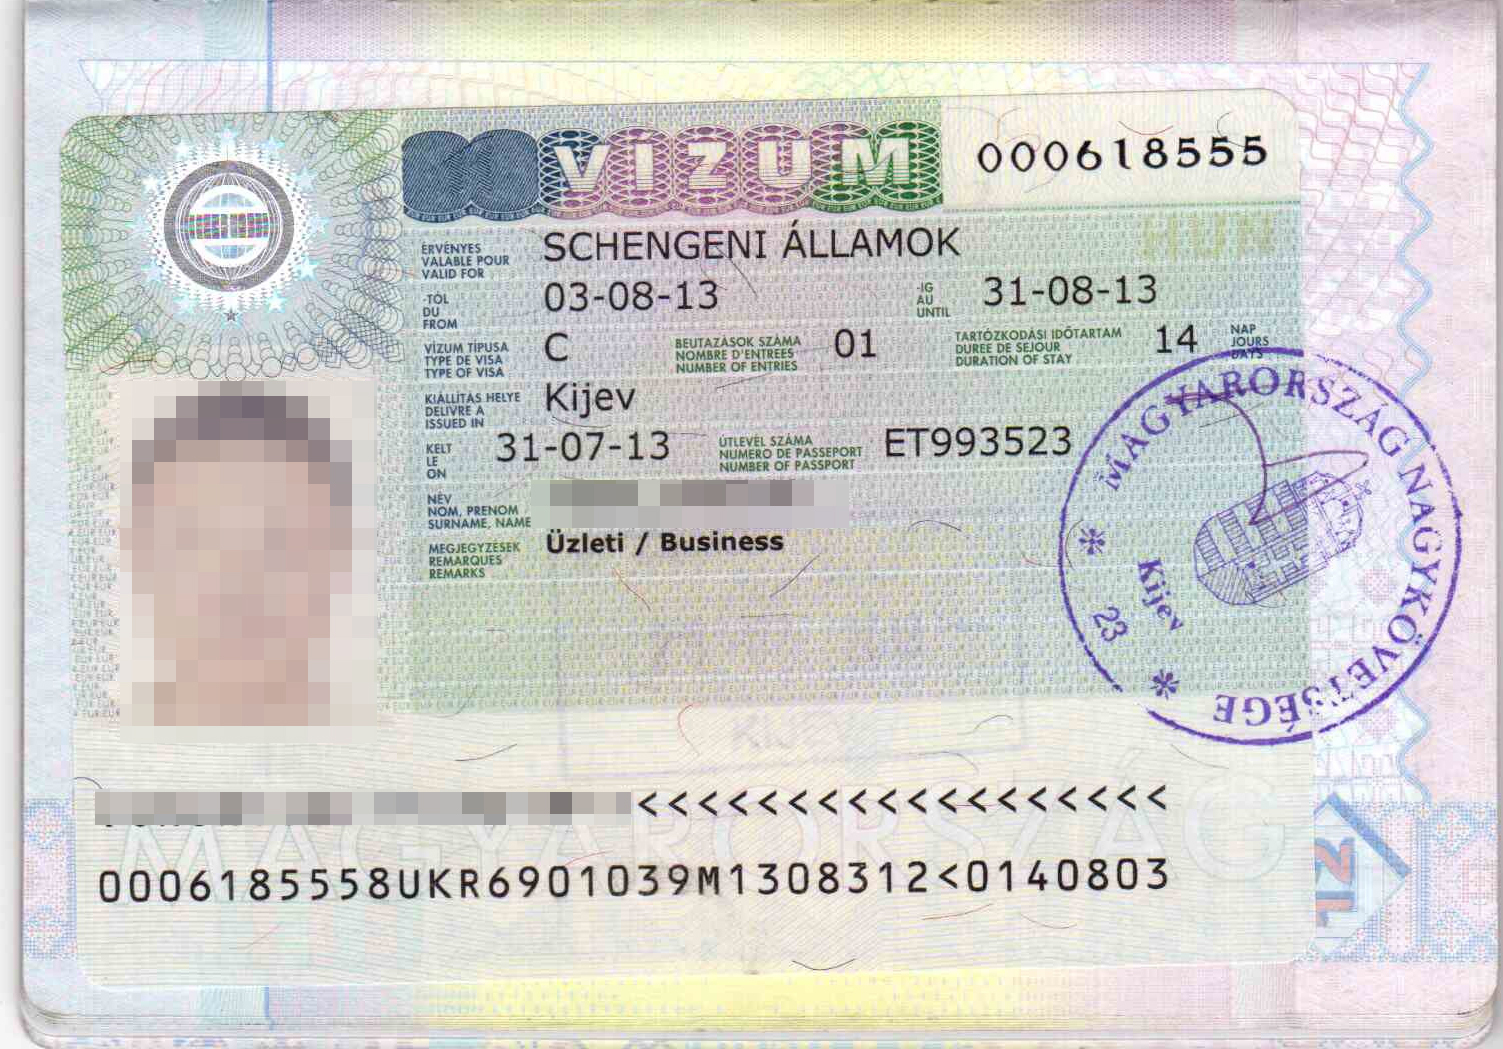 Виза в венгрию и будапешт россиянам: нужна ли, шенген это или нет, на сколько дают, как делать, и стоимость, документы, самостоятельное оформление, страховка, анкета юрэксперт онлайн